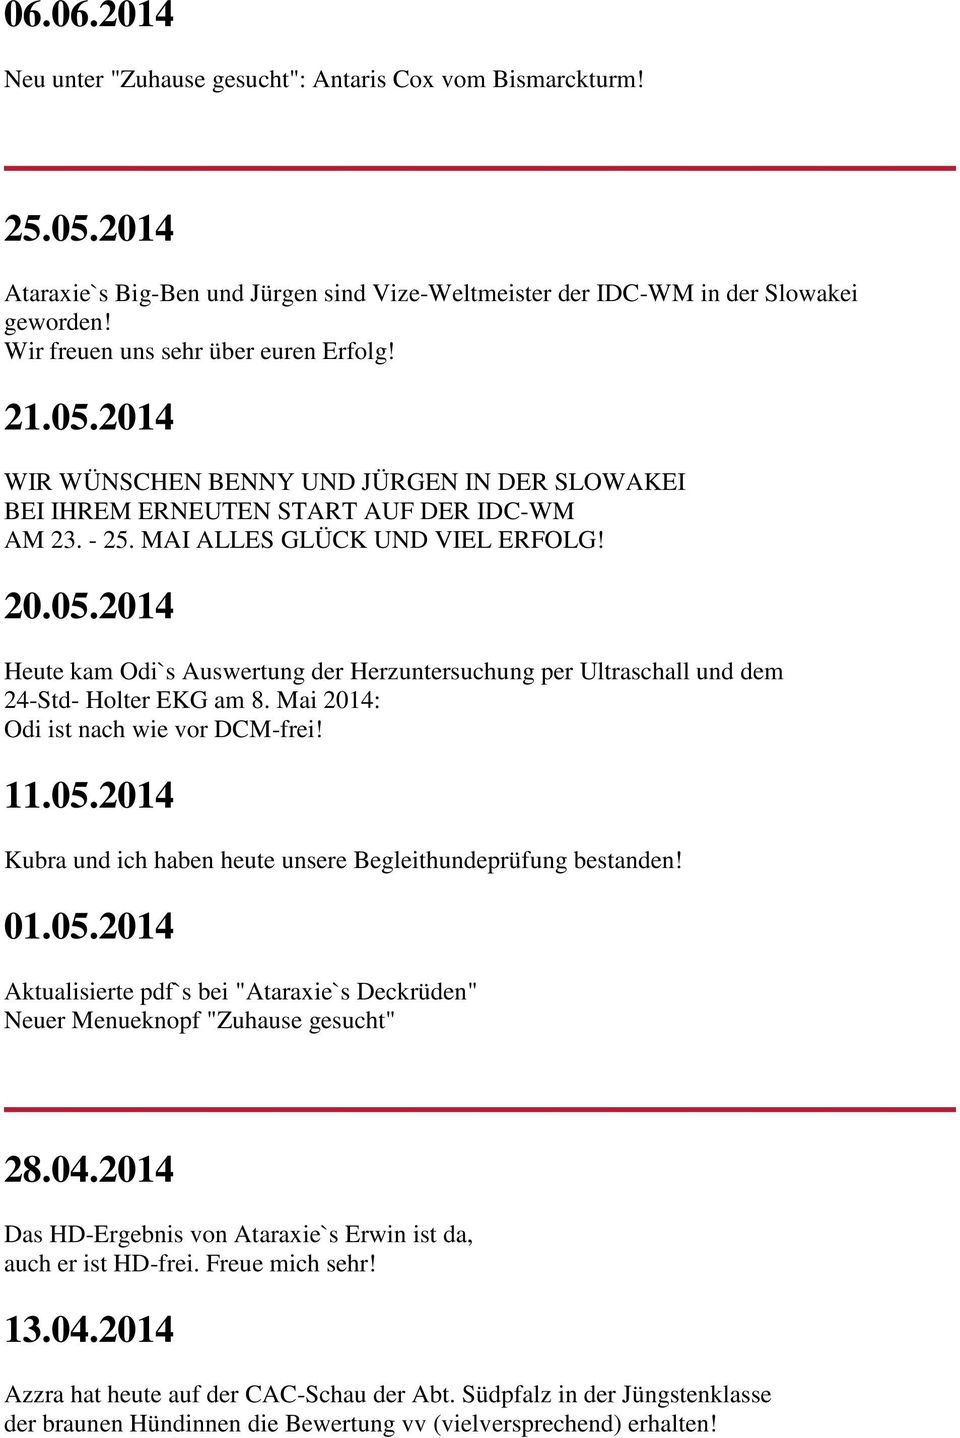 Mai 2014: Odi ist nach wie vor DCM-frei! 11.05.2014 Kubra und ich haben heute unsere Begleithundeprüfung bestanden! 01.05.2014 Aktualisierte pdf`s bei "Ataraxie`s Deckrüden" Neuer Menueknopf "Zuhause gesucht" 28.